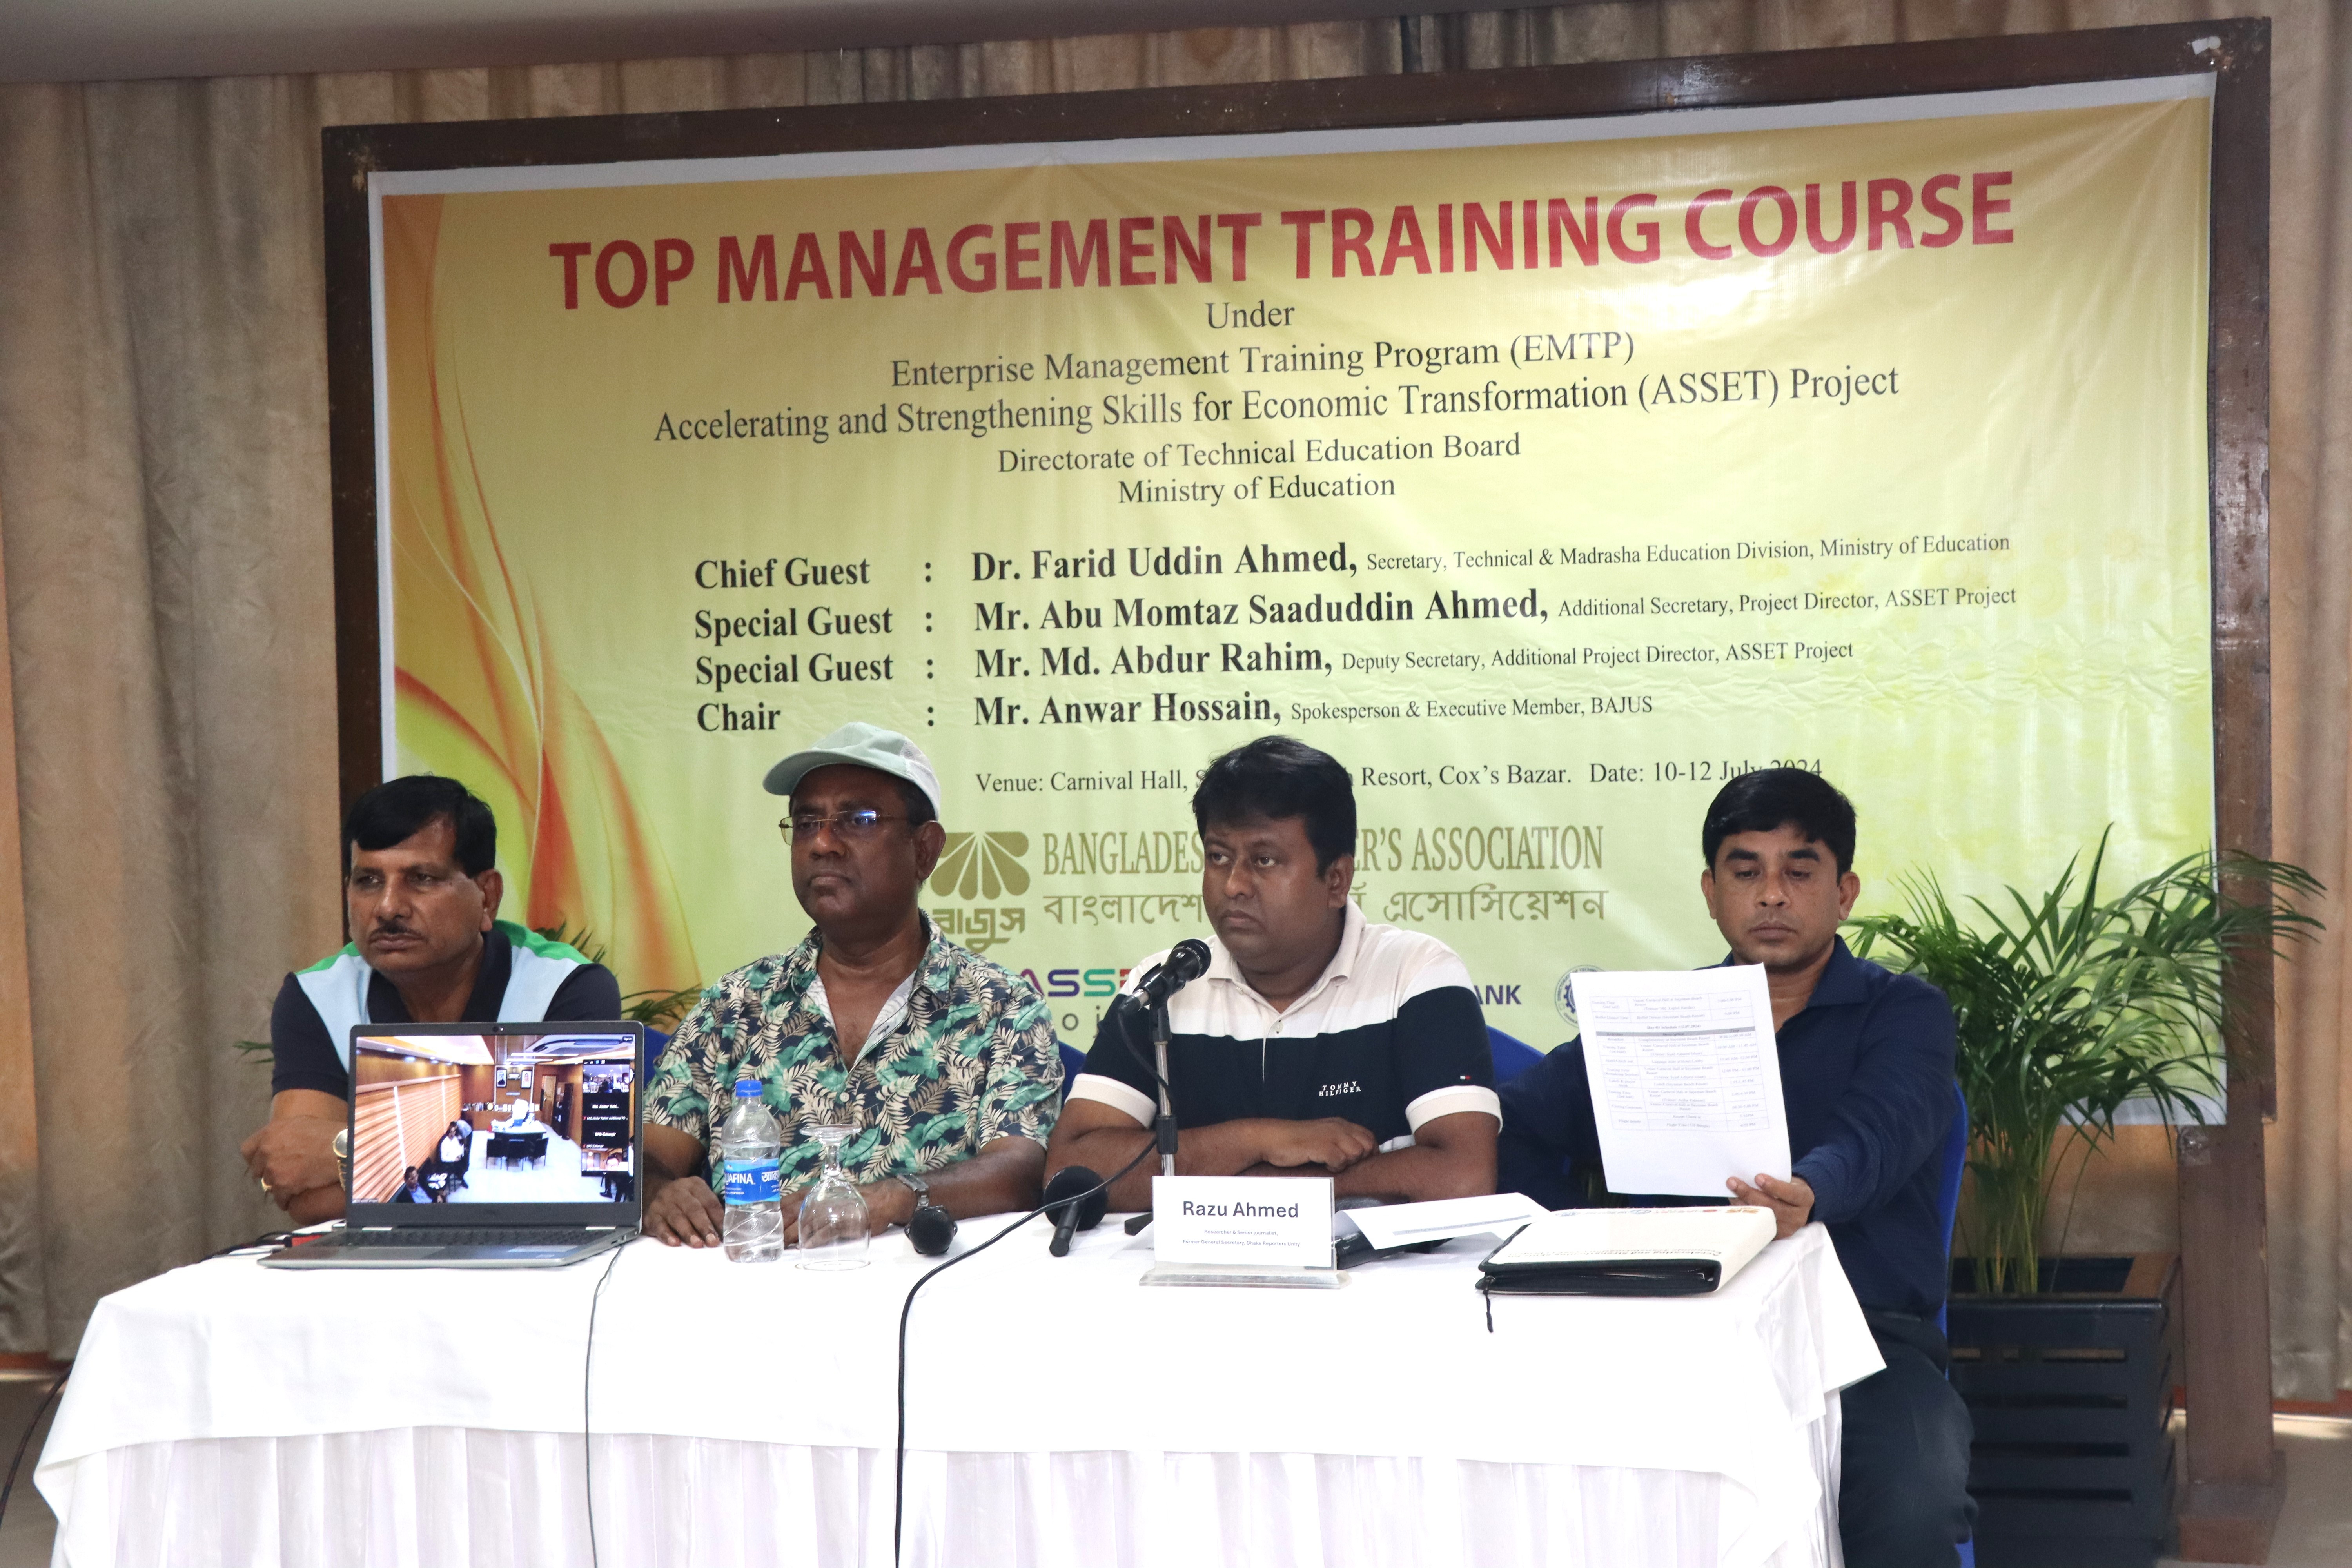 Top Management Training course under EMTP